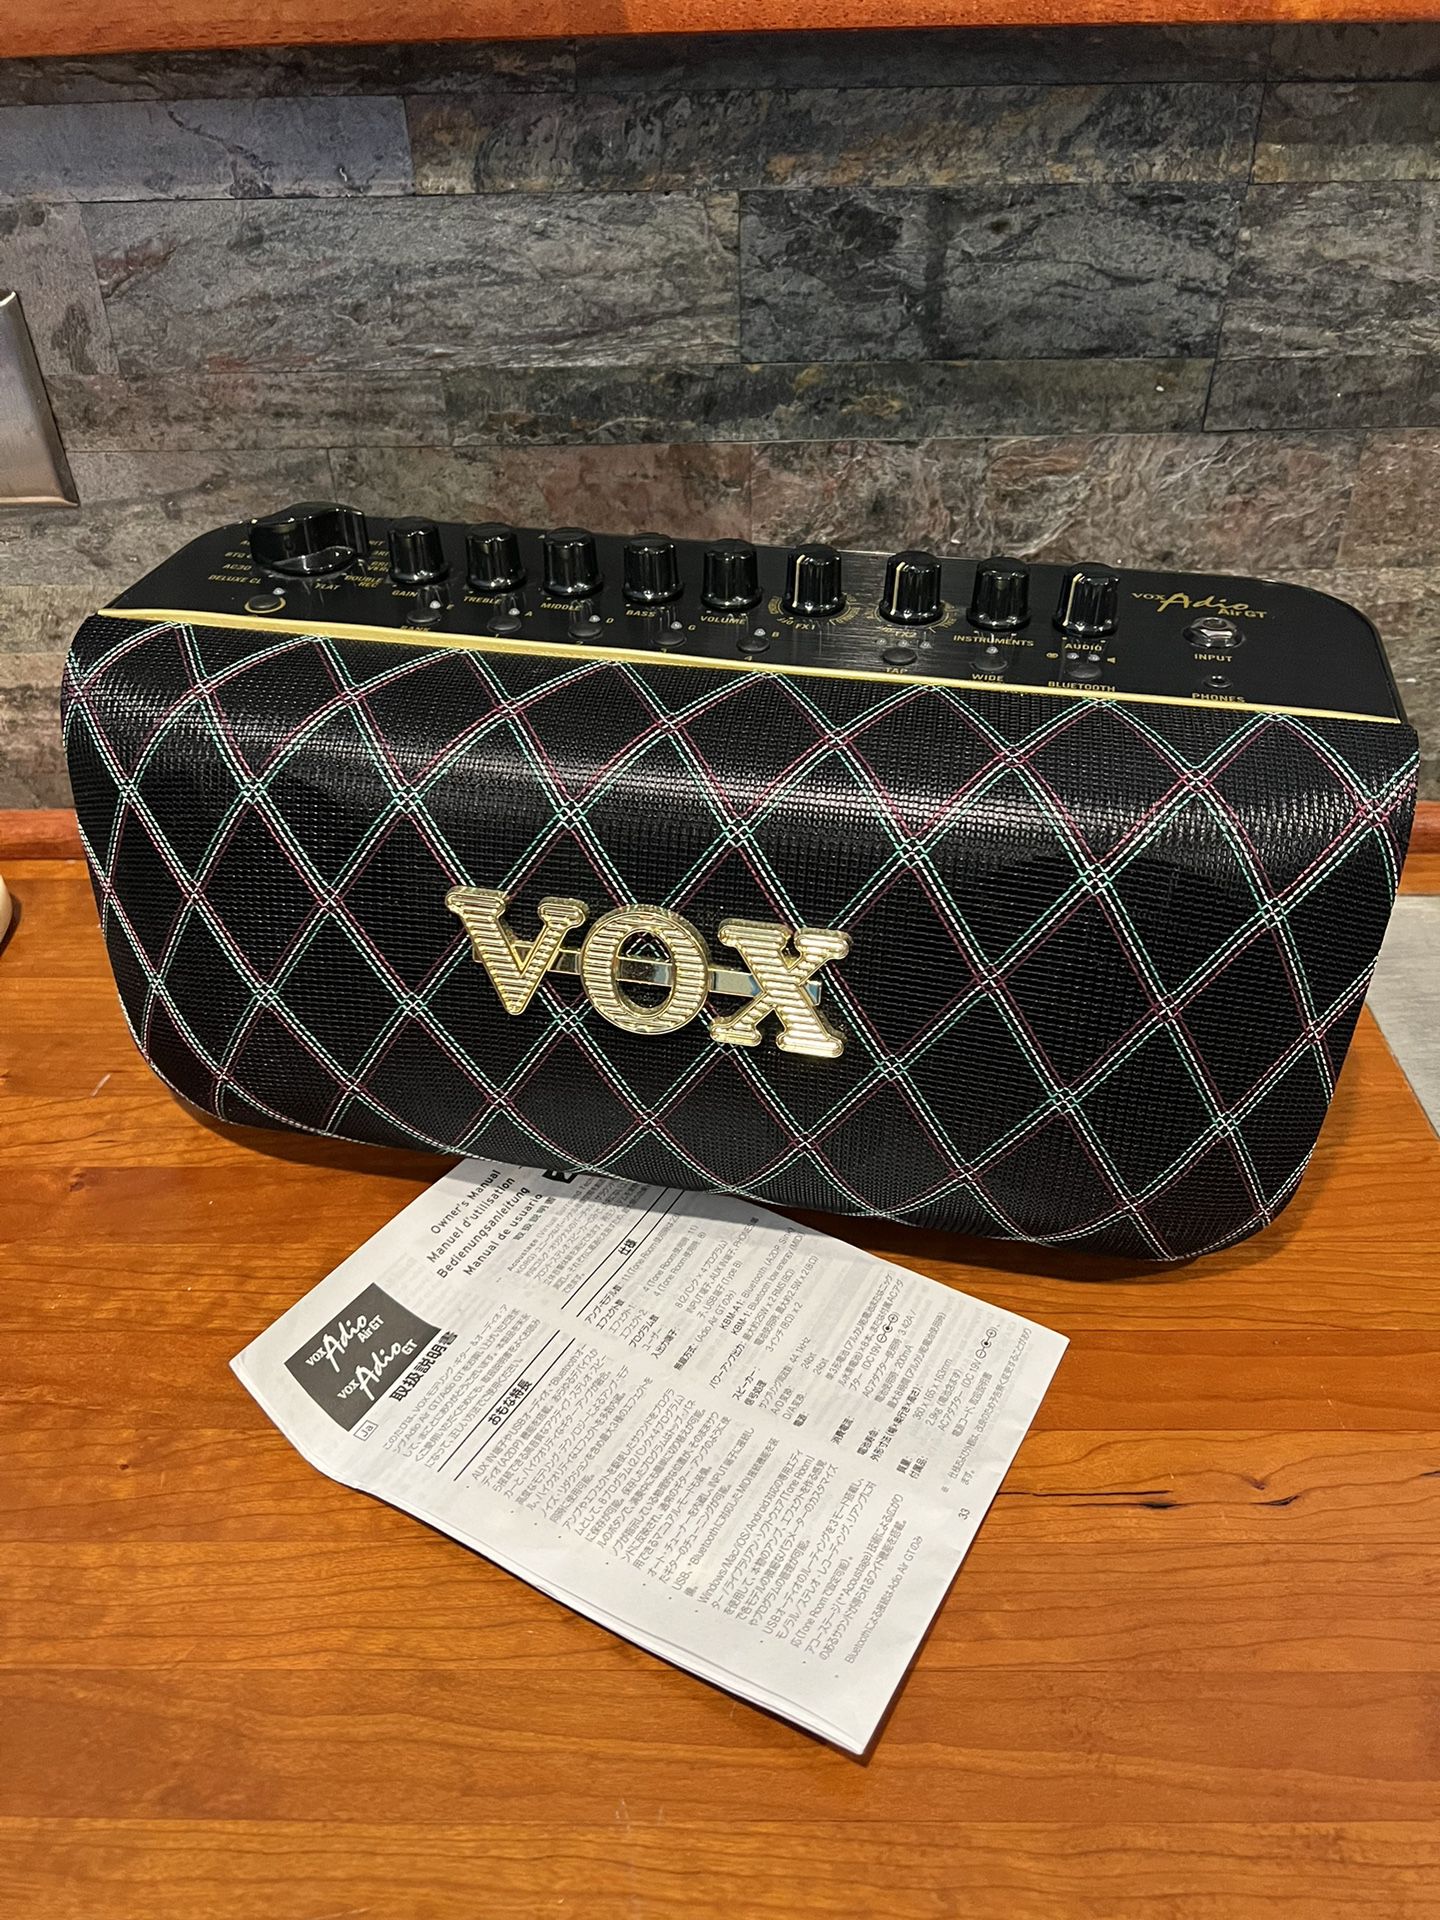 Vox Adio Air GT portable/desktop guitar amp 